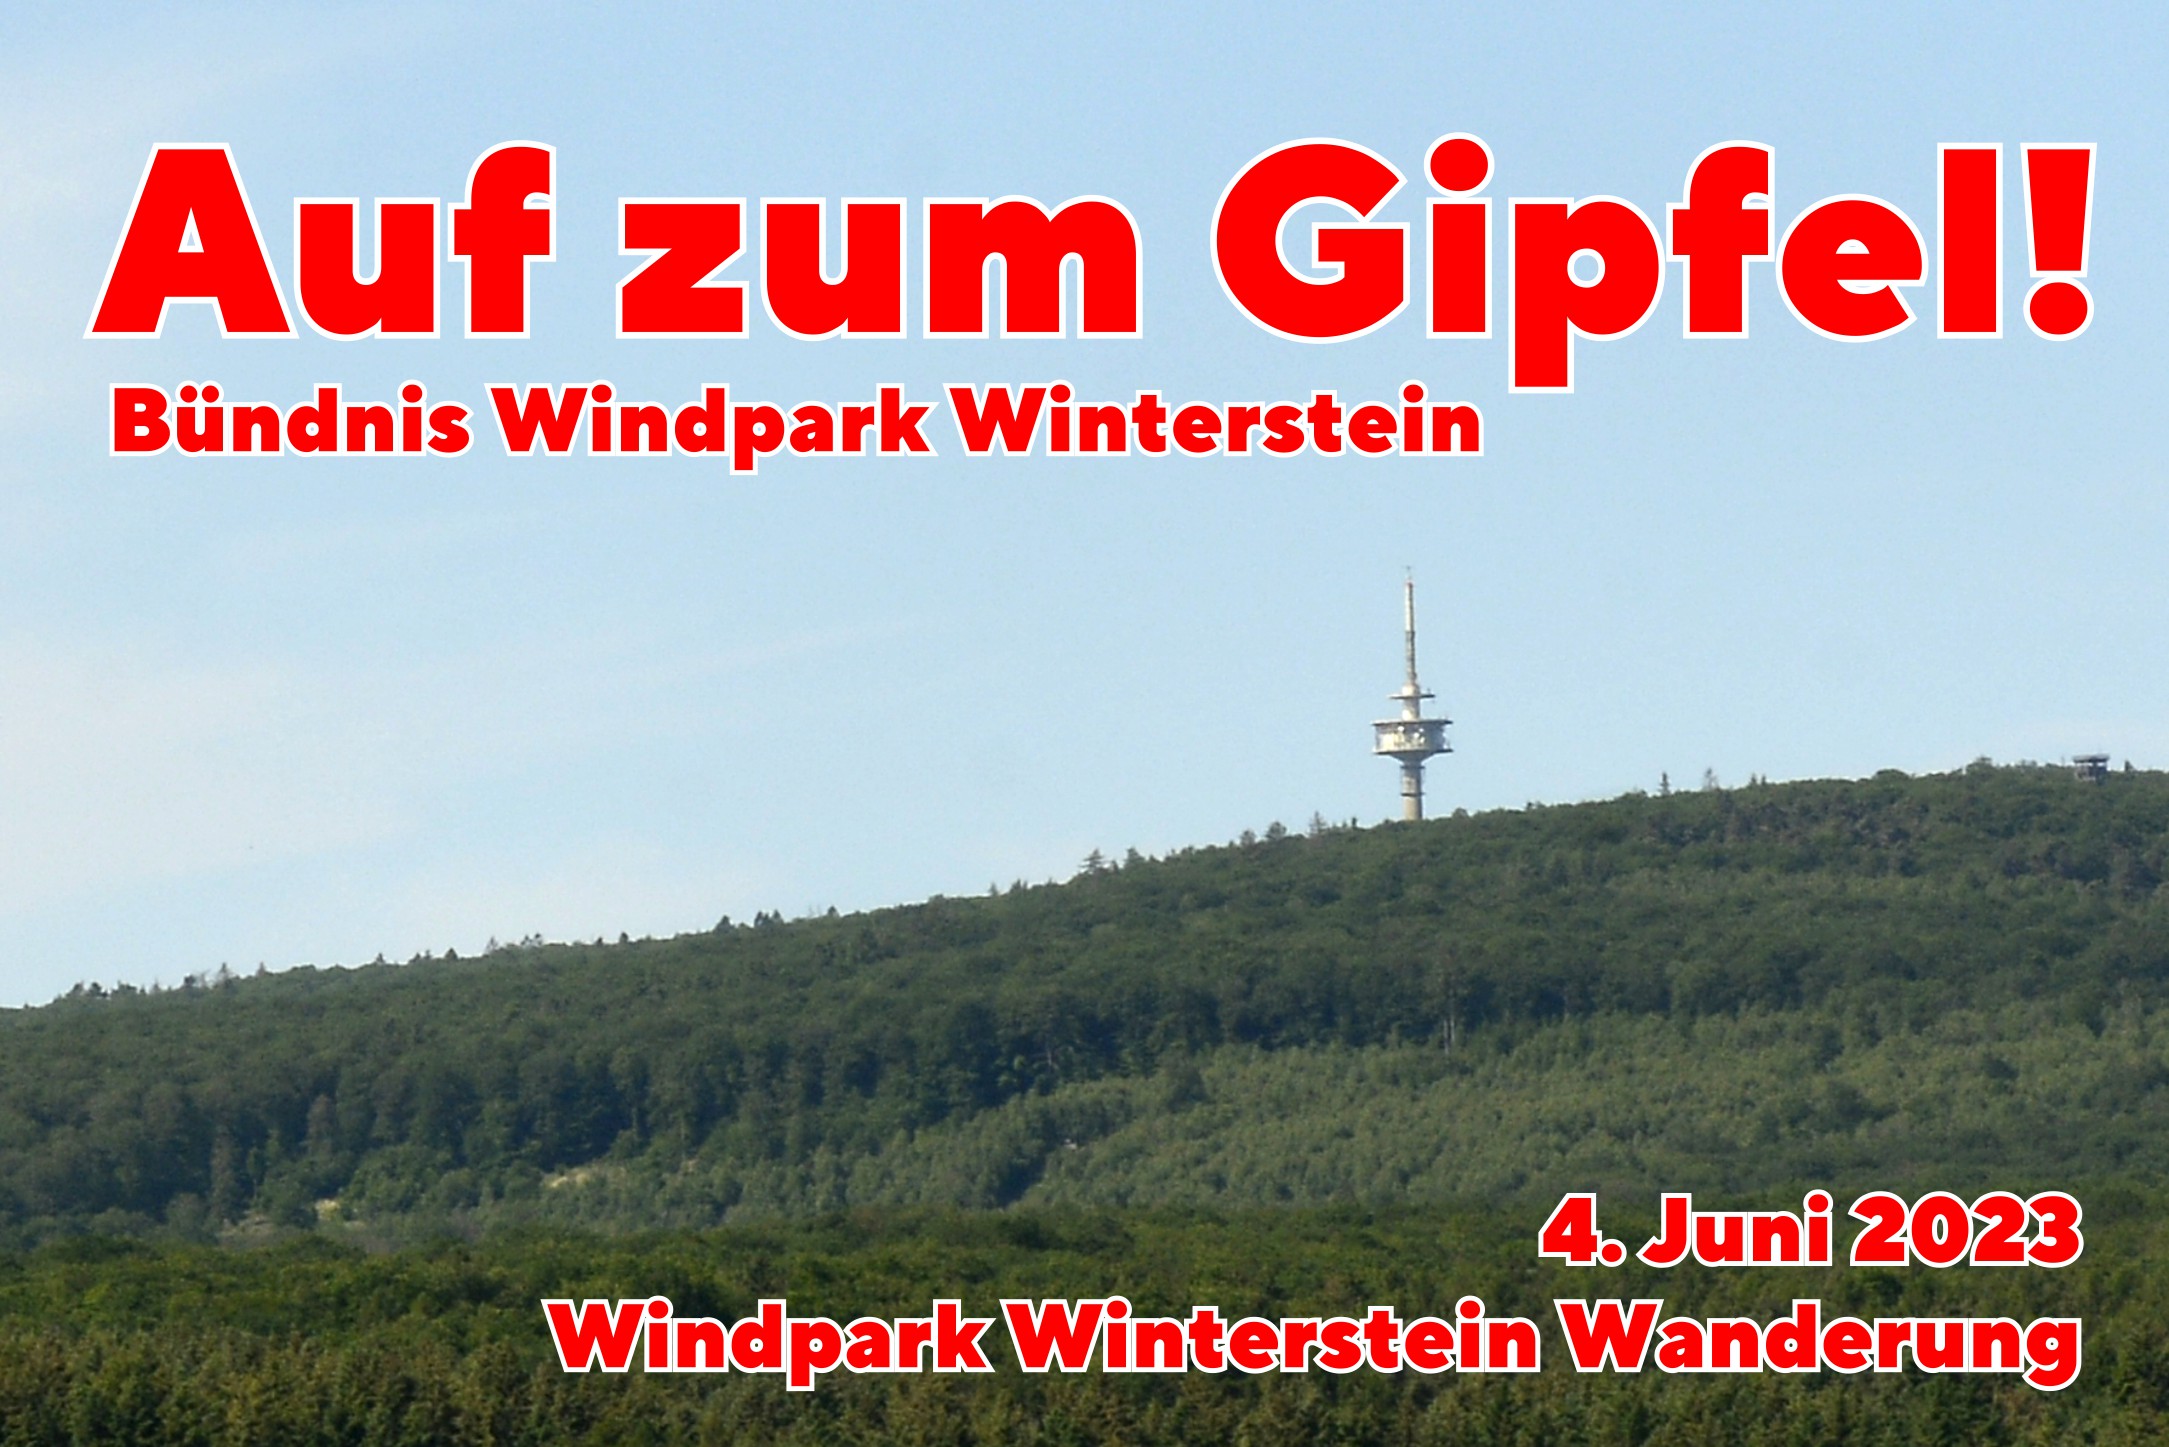 Der Fernmeldeturm auf dem Steinkopf ist das Ziel der Windpark Winterstein Wanderung, zu der das Bündnis Windpark Winterstein für den 4. Juni eingeladen hat.